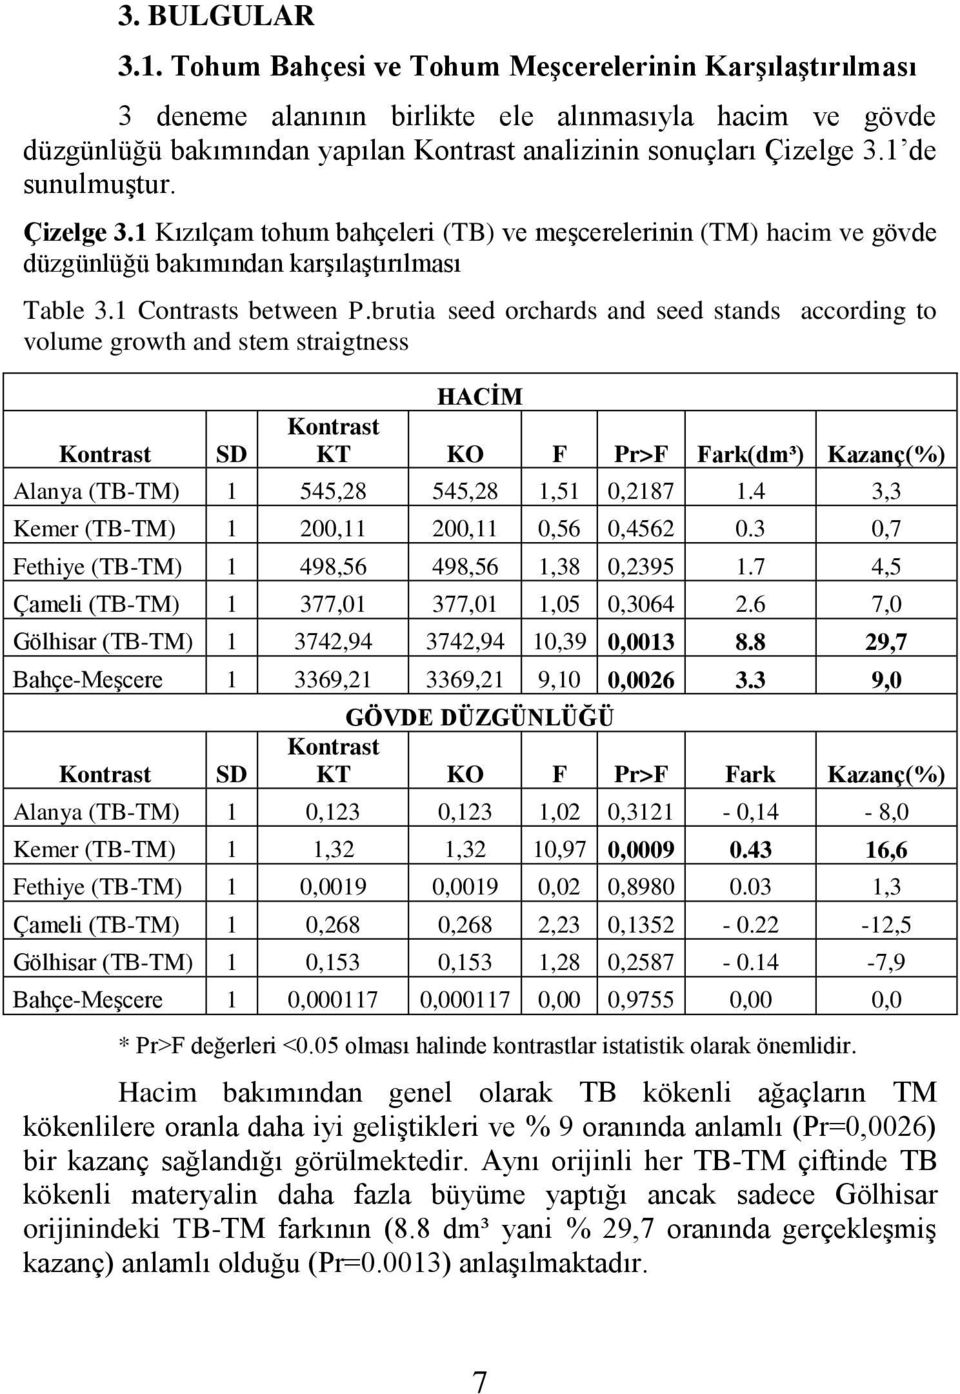 1 de sunulmuştur. Çizelge 3.1 Kızılçam tohum bahçeleri (TB) ve meşcerelerinin (TM) hacim ve gövde düzgünlüğü bakımından karşılaştırılması Table 3.1 Contrasts between P.